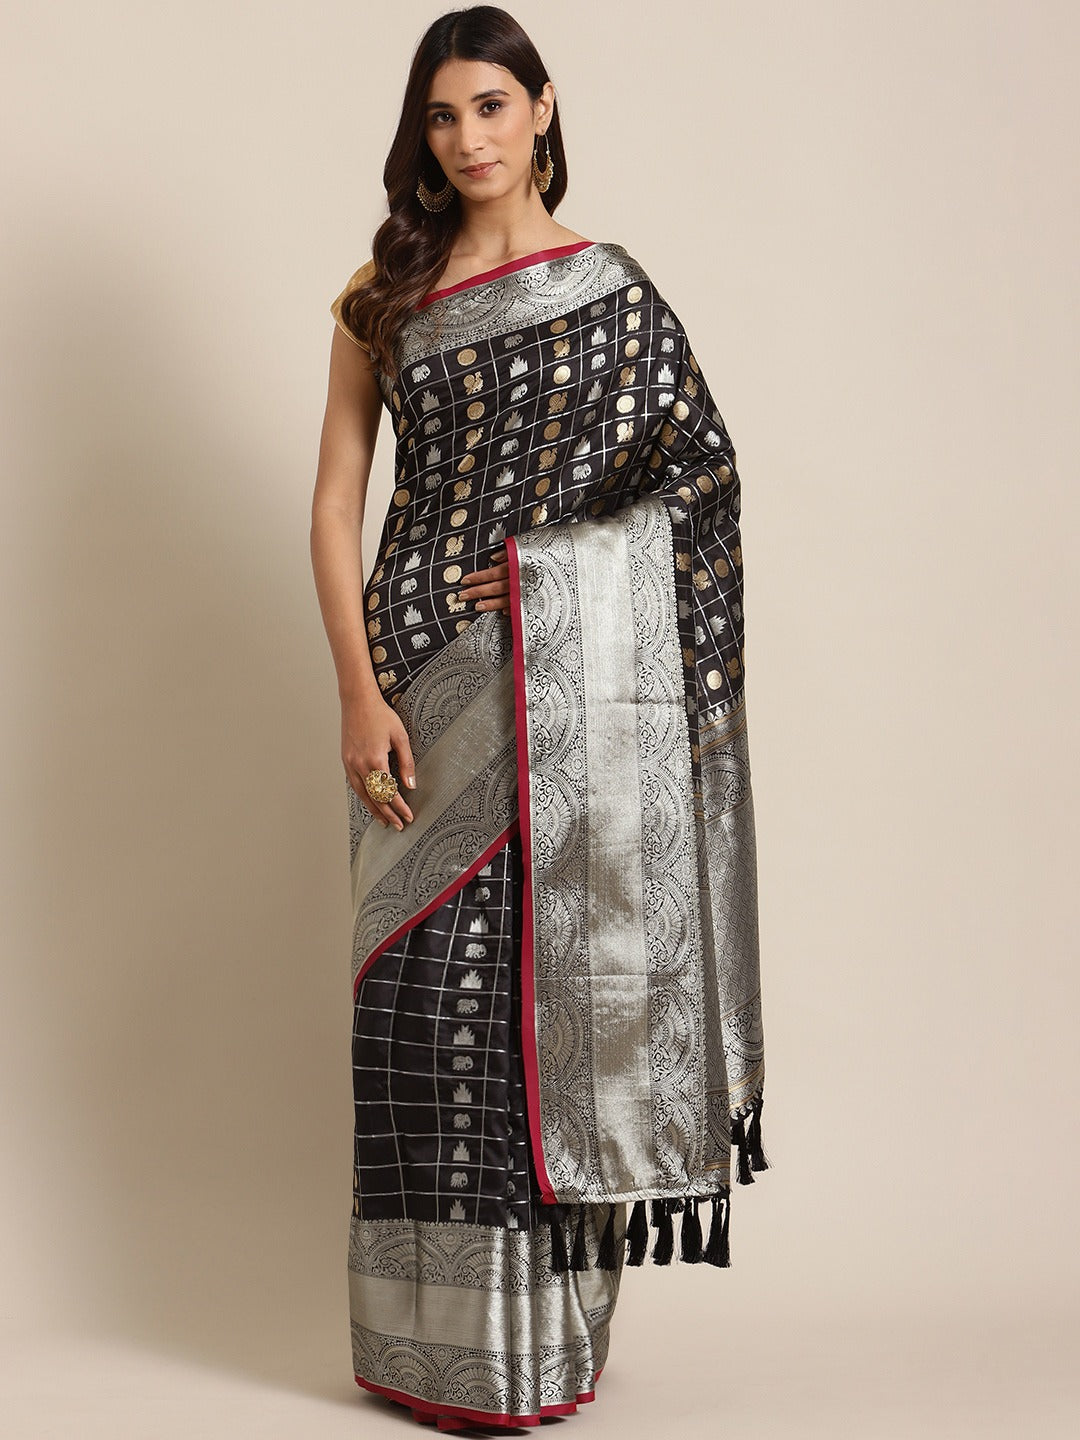 Exclusive Black Colour Woven Design Banarasi Saree